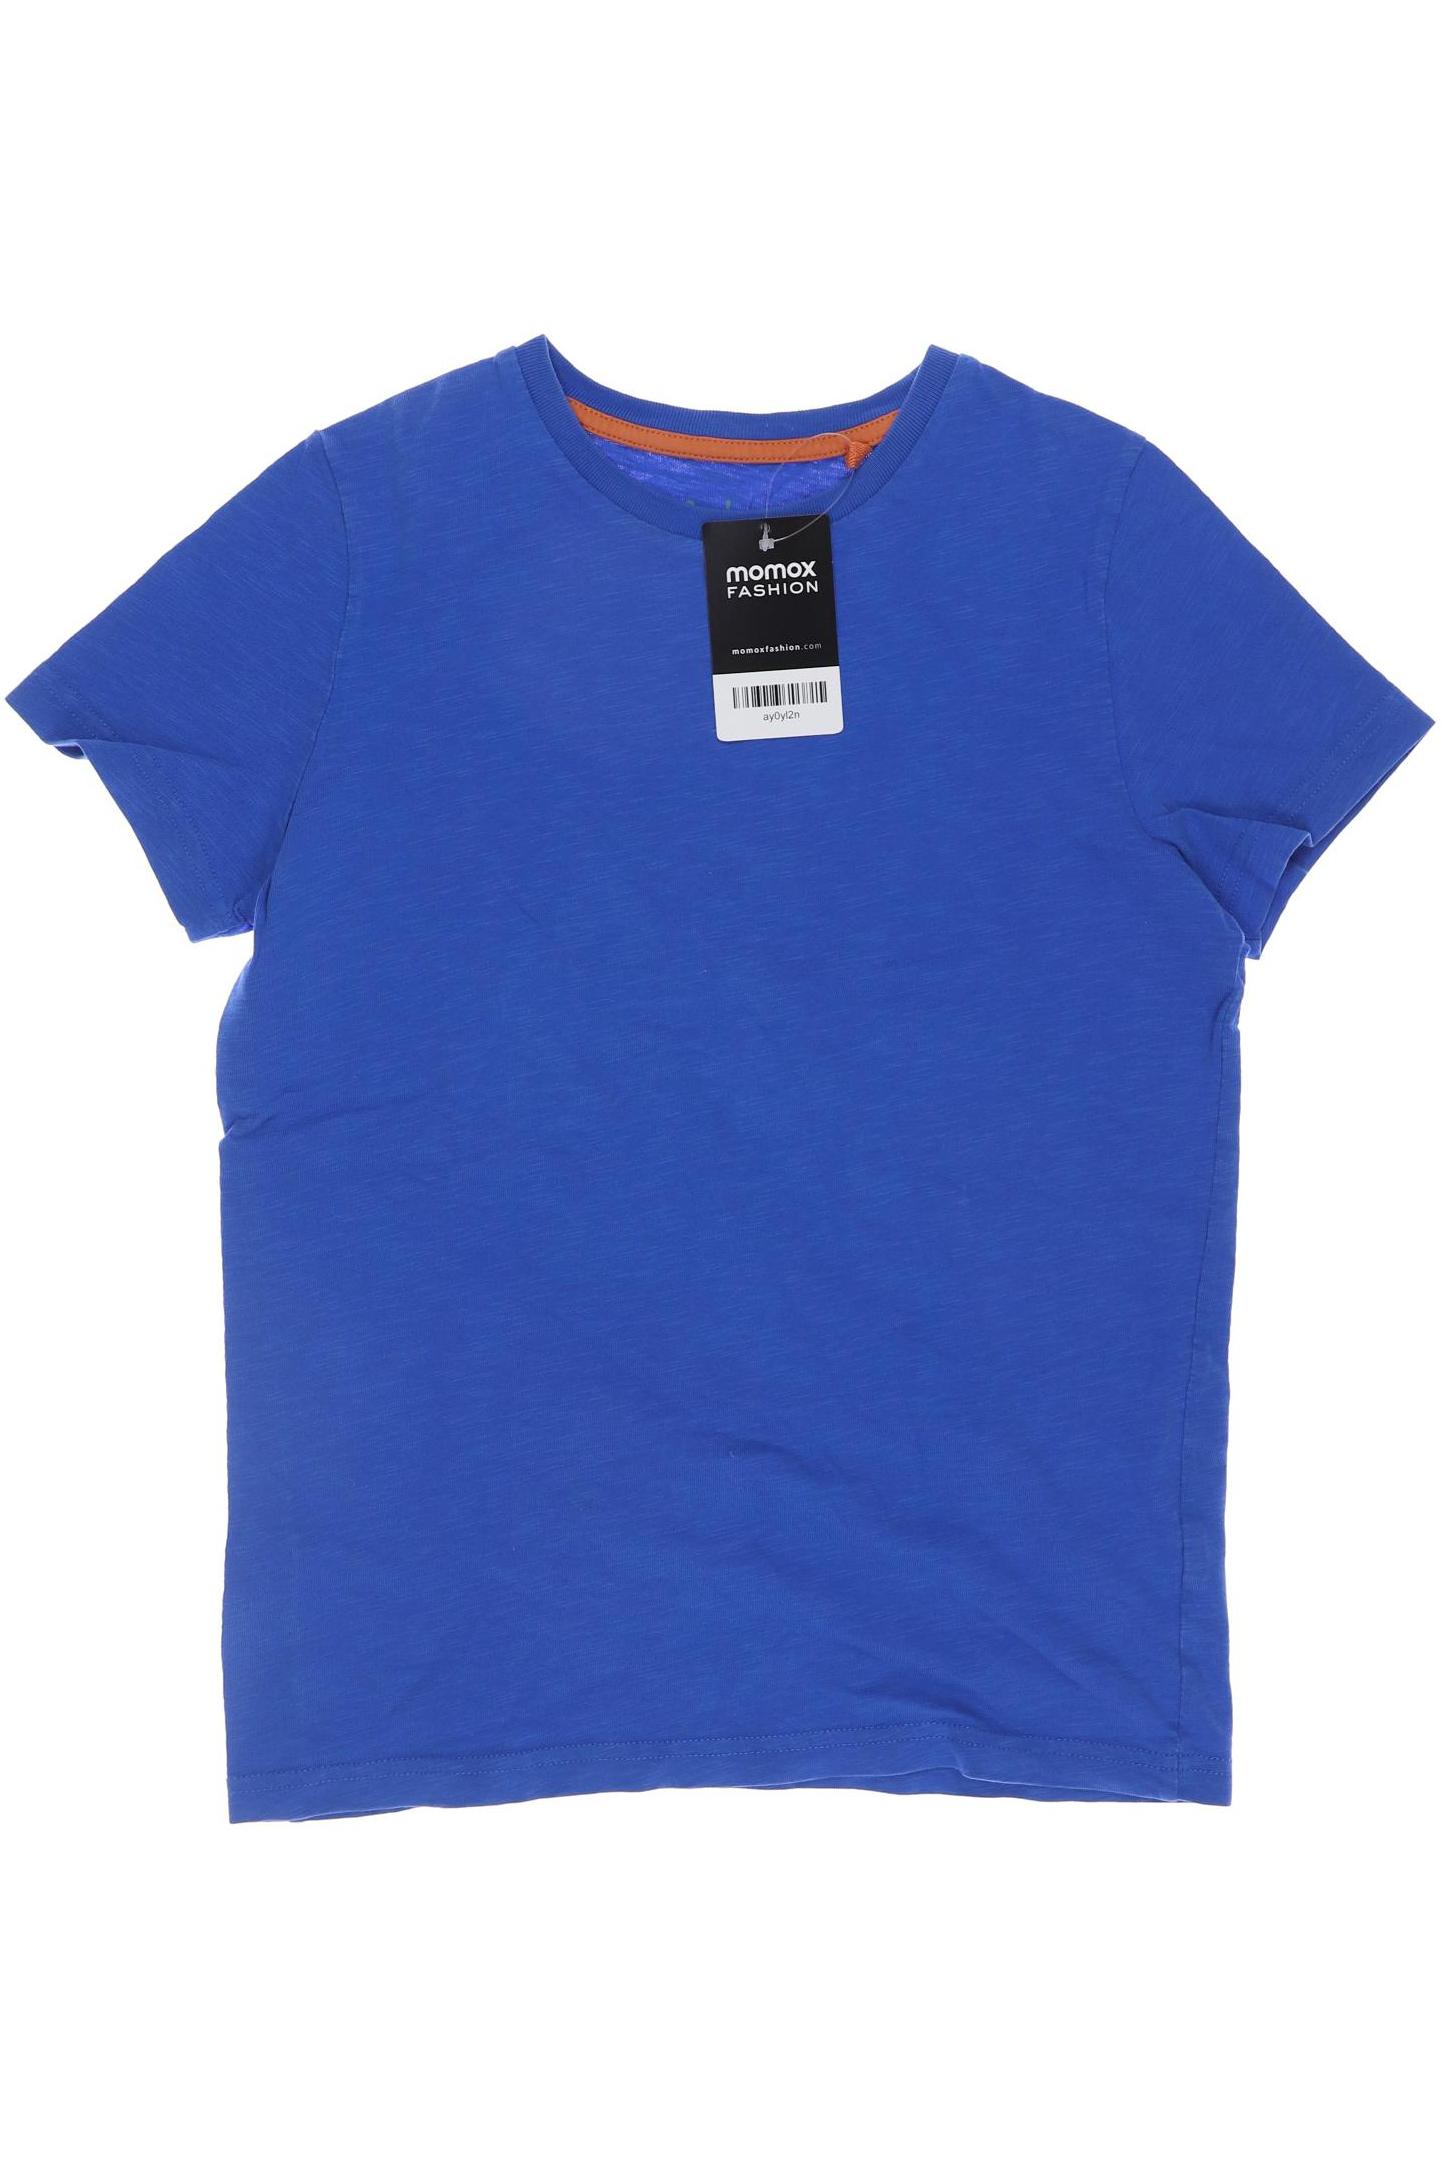 Boden Herren T-Shirt, blau, Gr. 152 von Boden